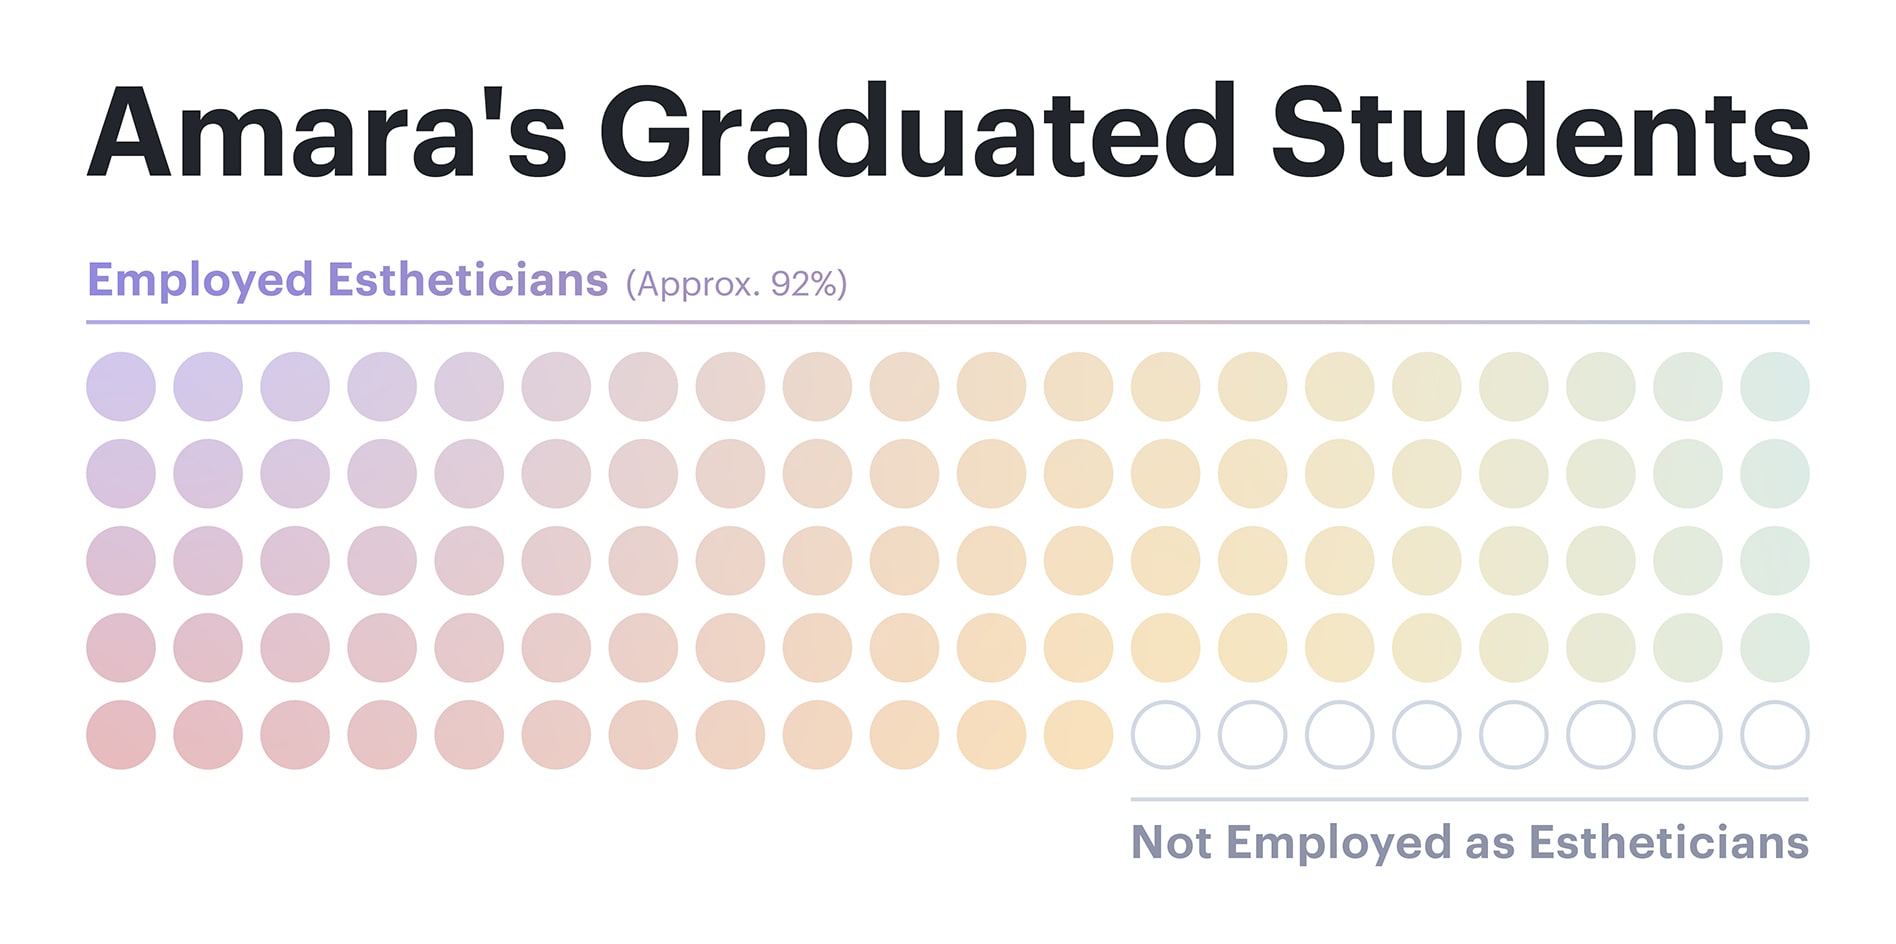 Among Amara's graduated students, approximately 92% are employed estheticians.